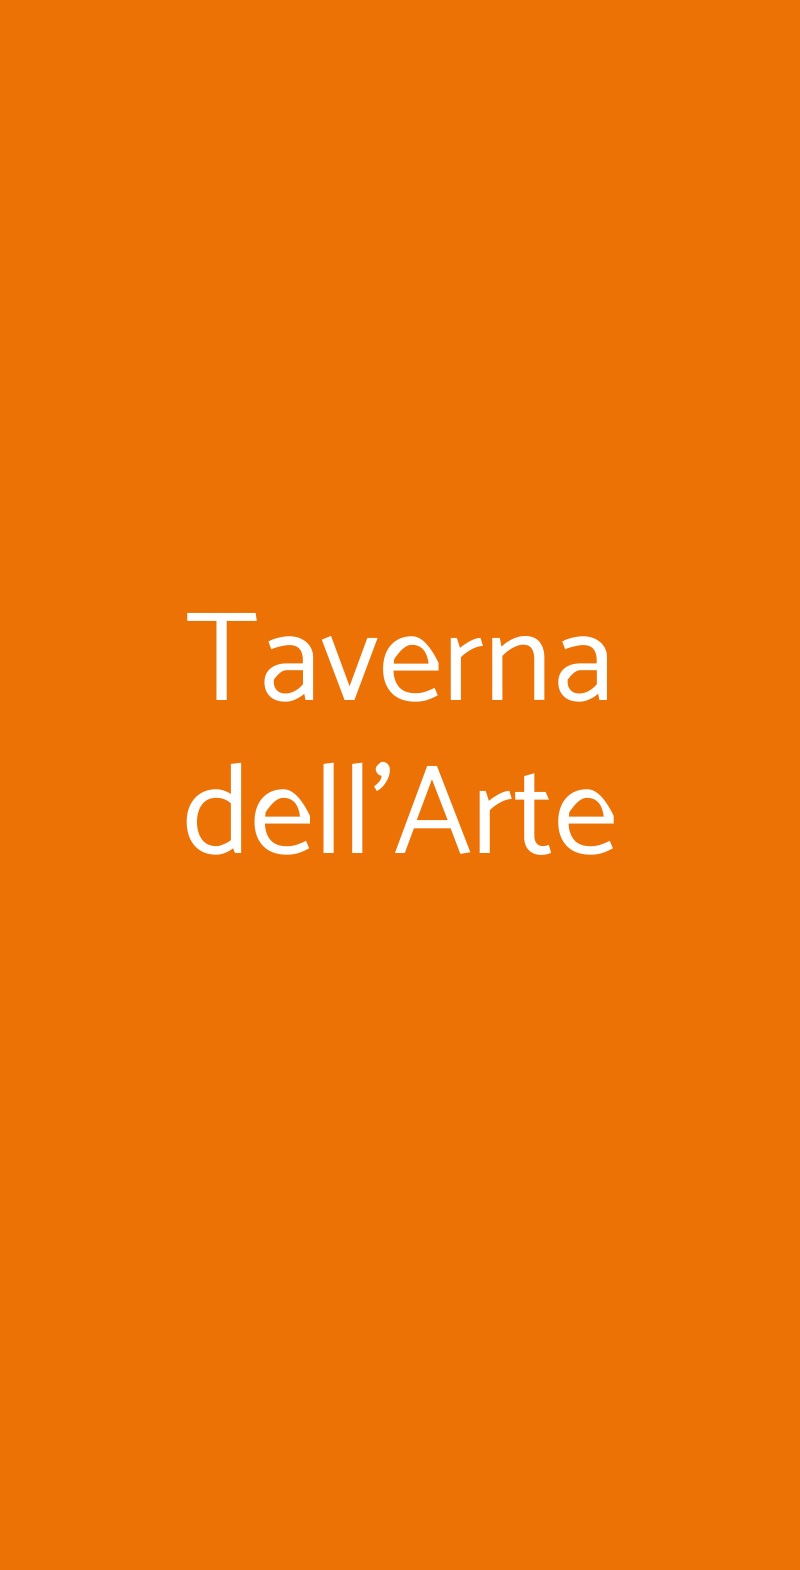 Taverna dell'Arte Napoli menù 1 pagina